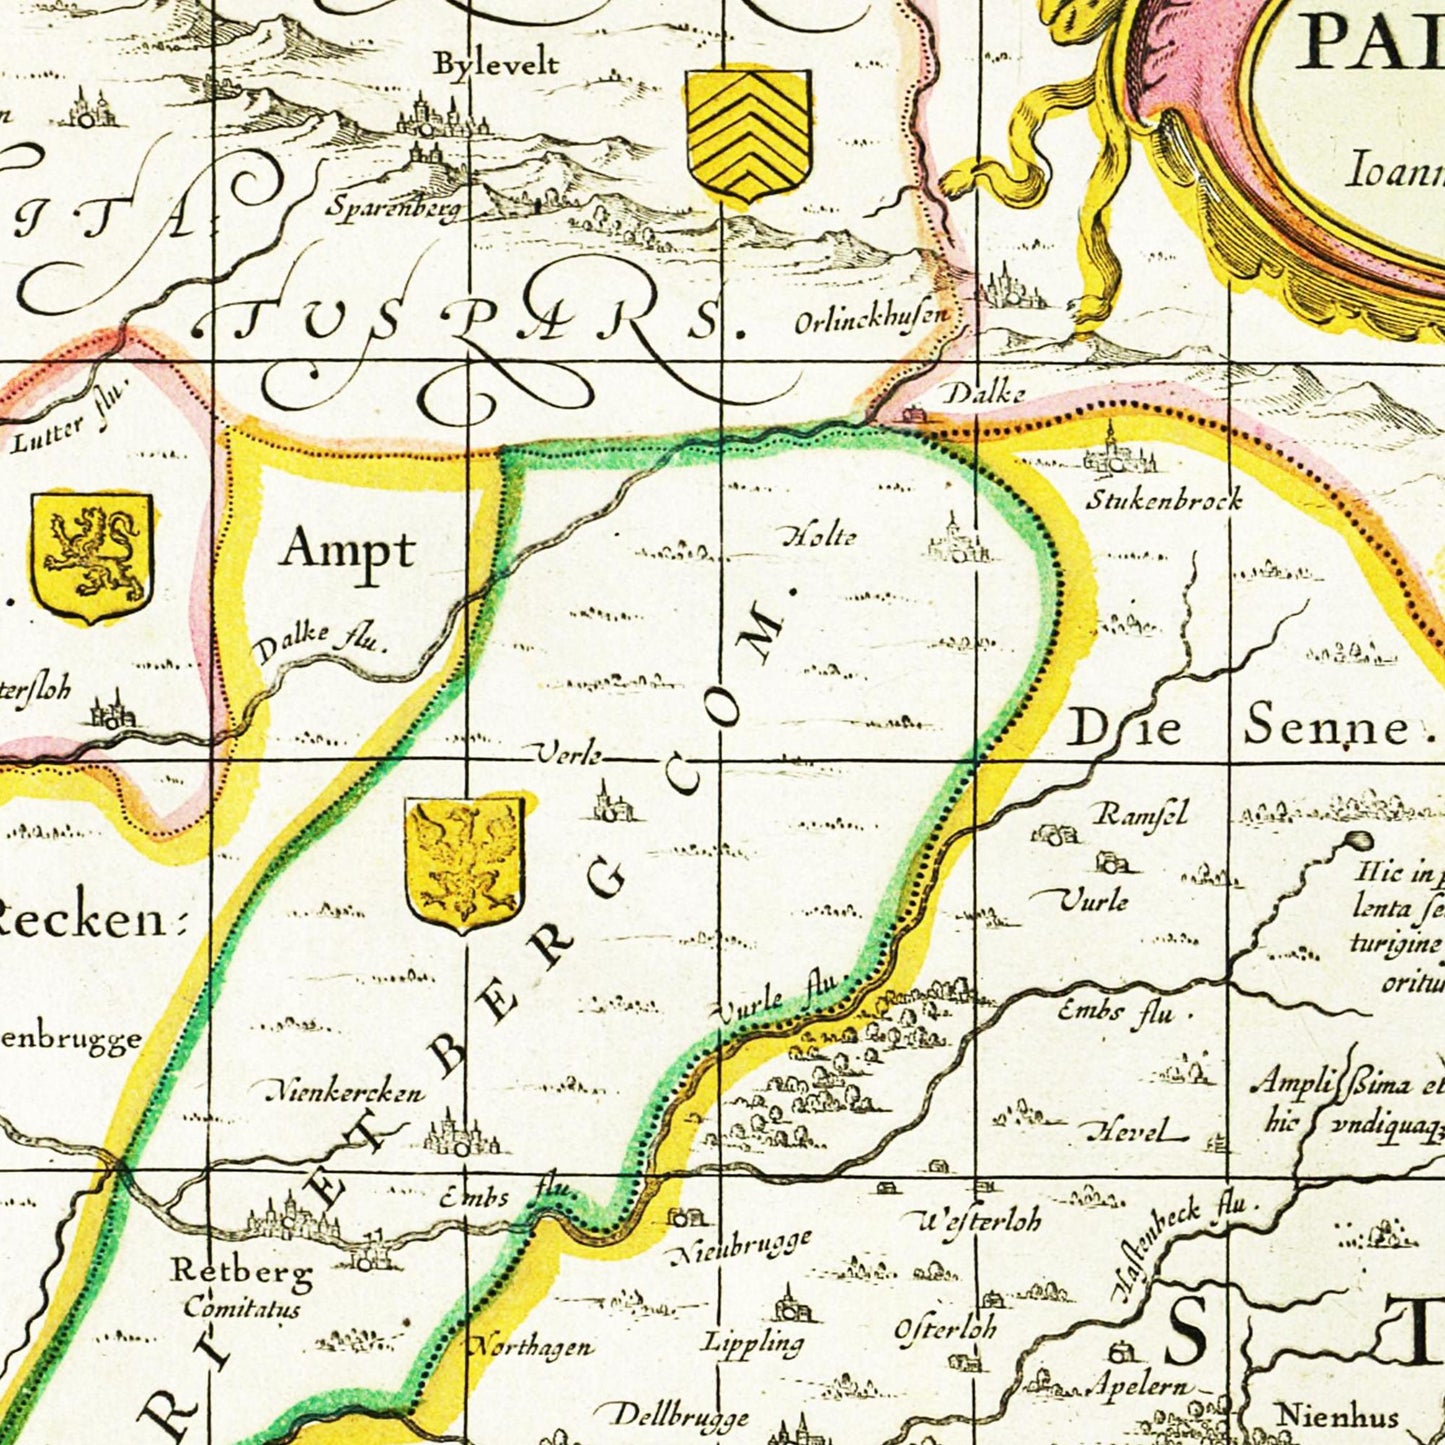 Historische Landkarte Paderborn um 1700